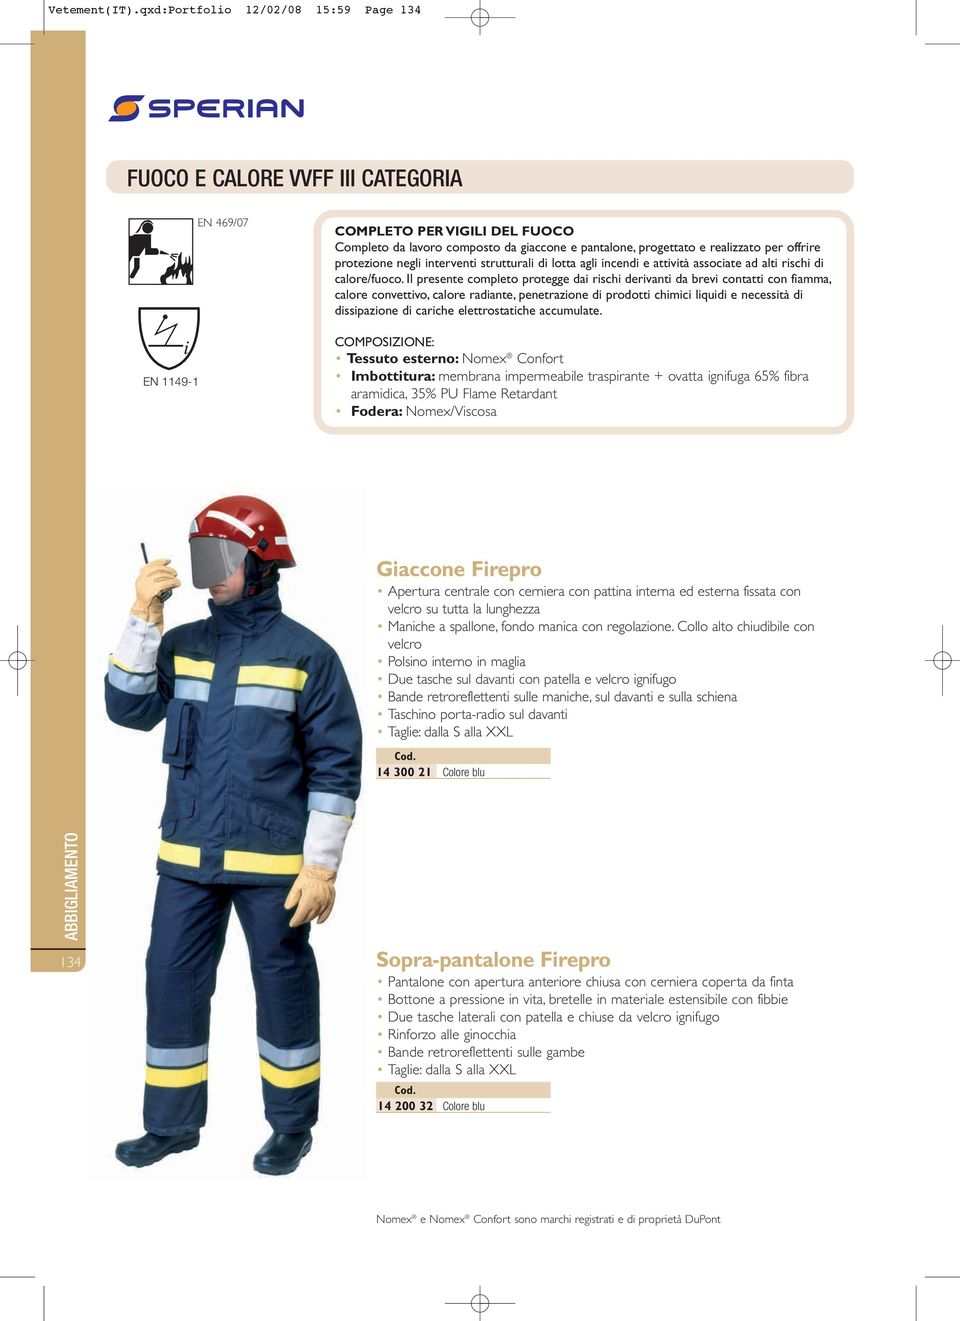 per offrire protezione negli interventi strutturali di lotta agli incendi e attività associate ad alti rischi di calore/fuoco.